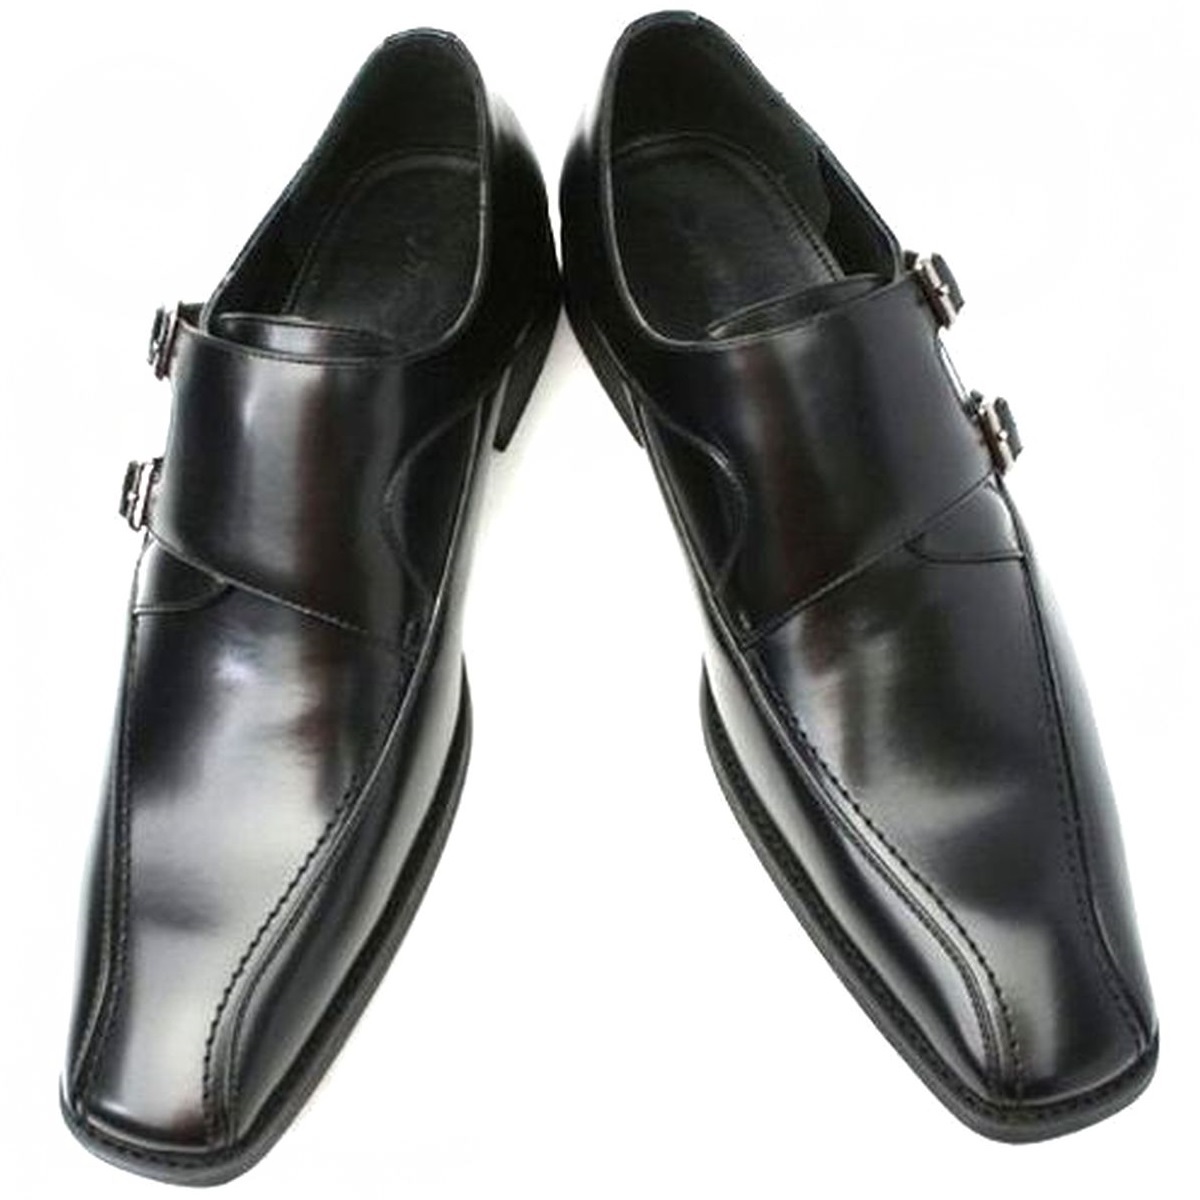 黒 26.5cm お手入れ簡単 雨に強い合皮ビジネスシューズ ダブルモンク紳士靴 ゆったり幅広 某有名靴メーカー同工場制作 本州送料無料 103_画像3